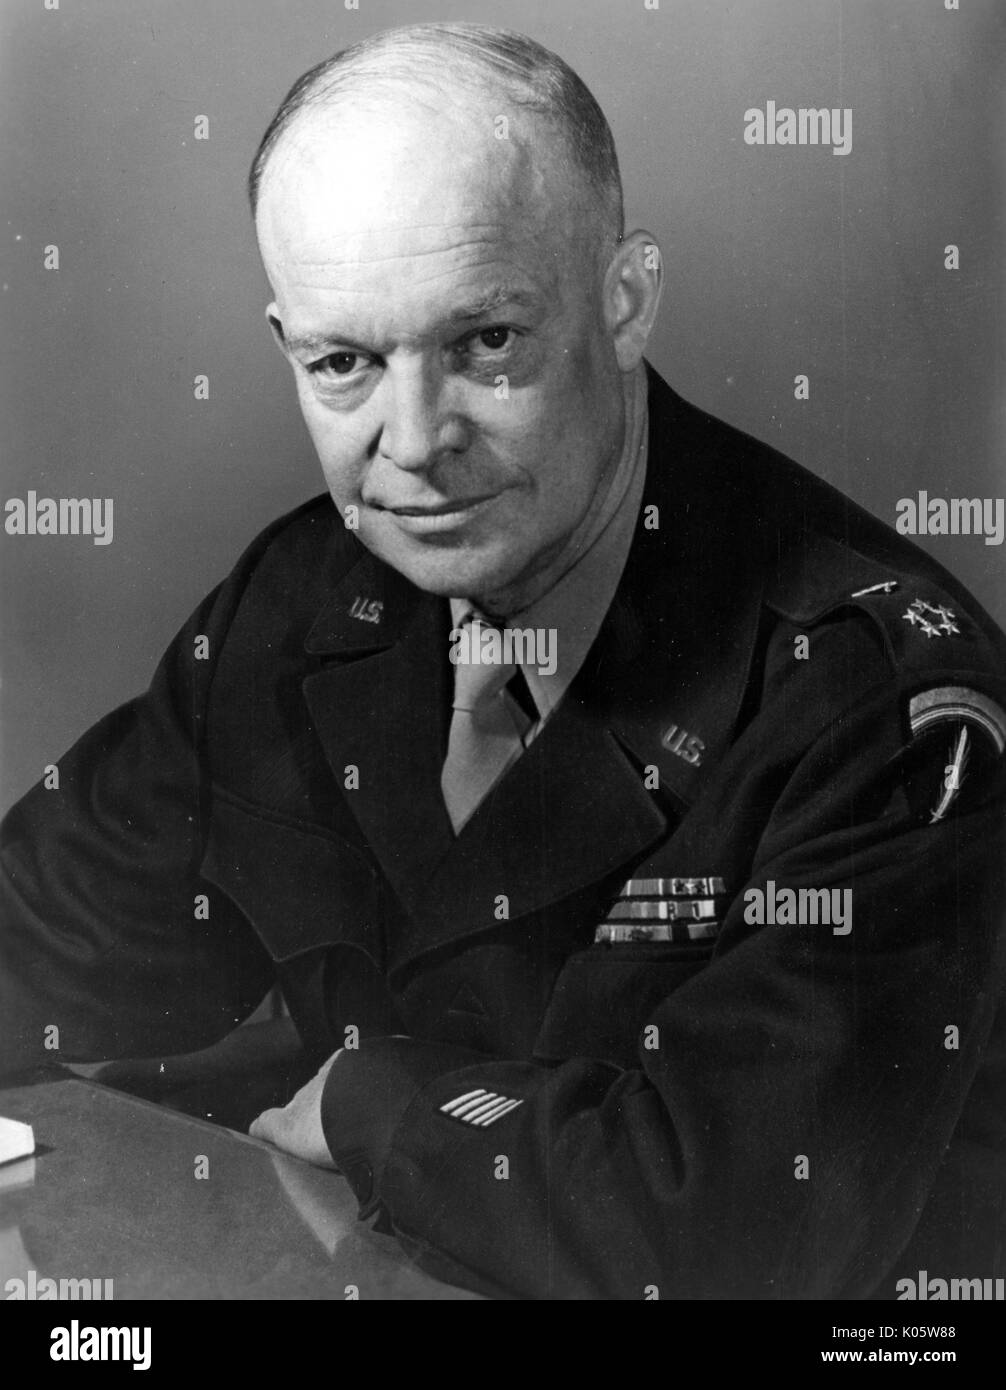 Brustbild von Dwight Eisenhower, mit den Armen stützte sich auf einen Tisch sitzt, mit einem ernsten Gesichtsausdruck, mit schwarzen militärischen Shirt, 1945. Stockfoto